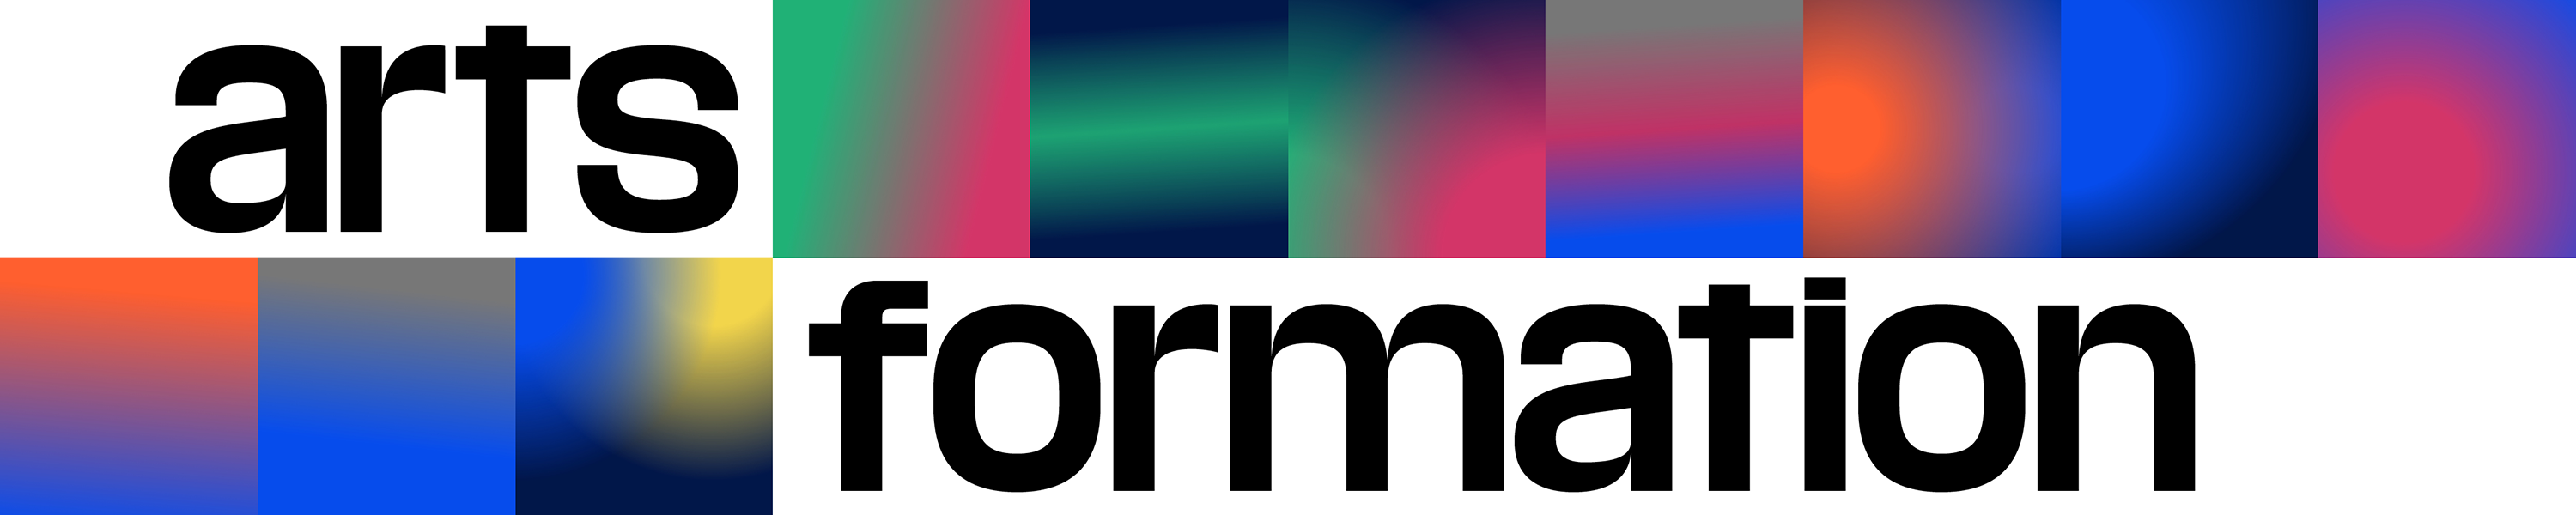 Artsformation Logo Variant 1